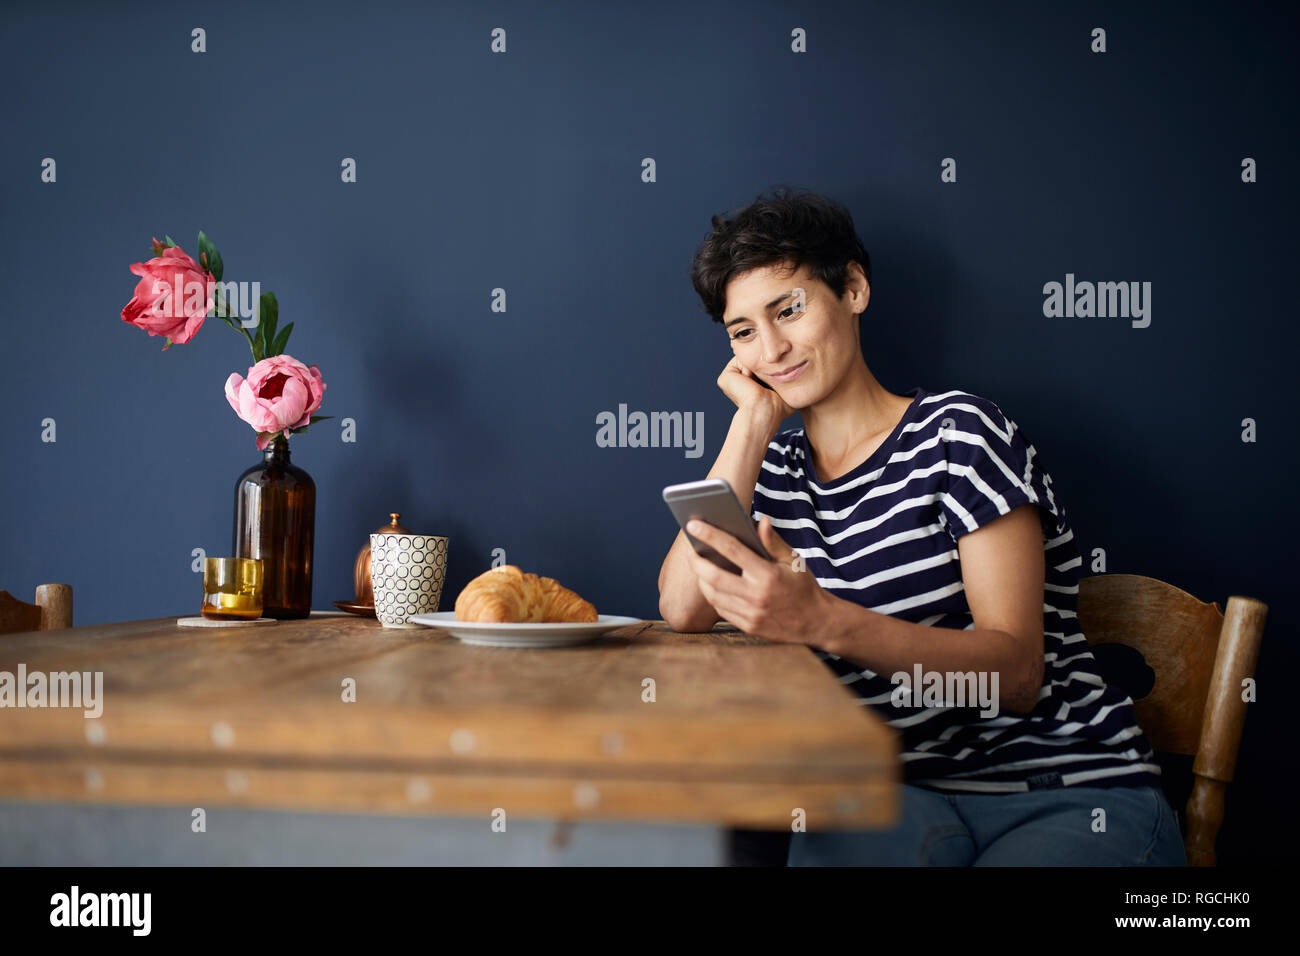 Mujer sonriente en casa sentados en la mesa de madera, control de teléfono celular Foto de stock